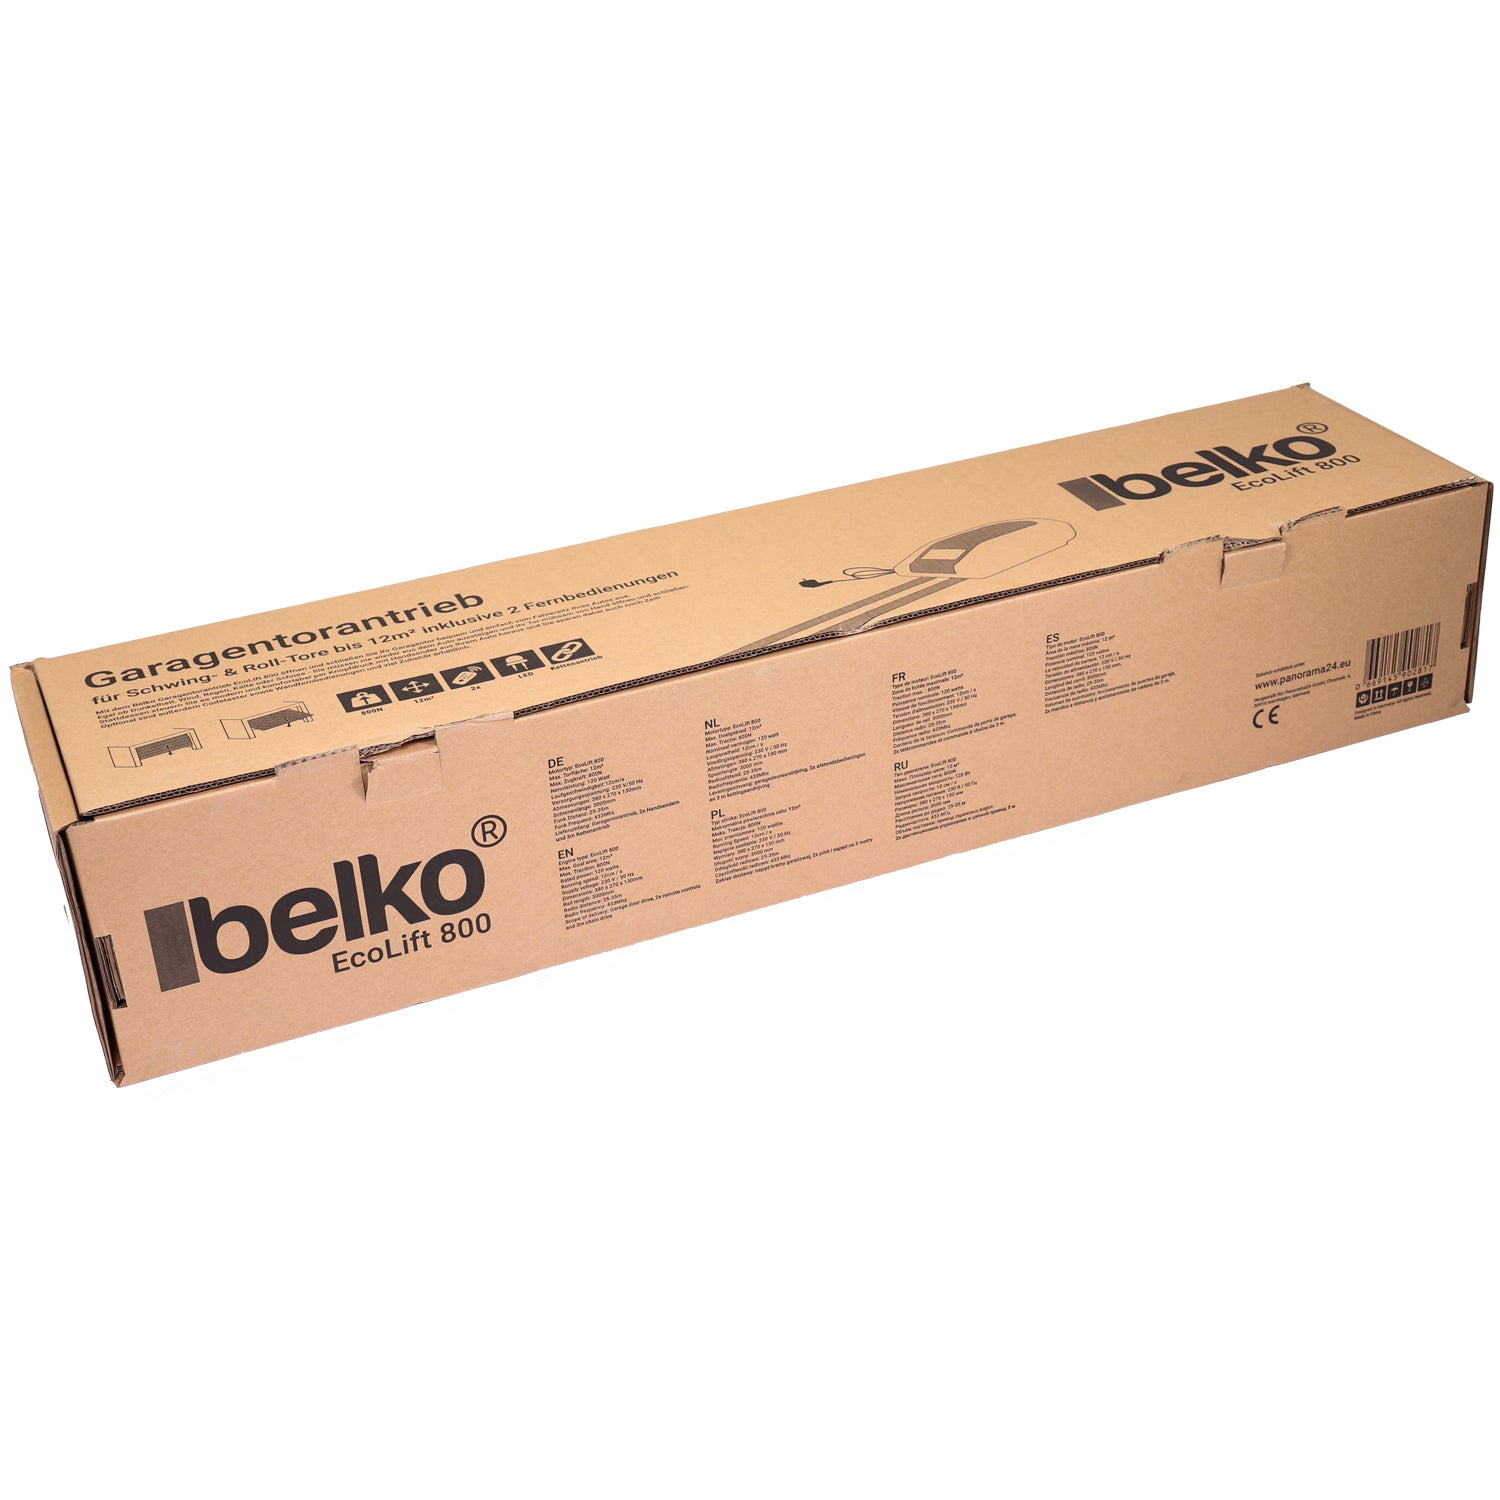 Belko® Garagentorantrieb EcoLift 800 für Schwing- & Roll-Tore bis 12m², inkl. 2 Fernbedienungen 433 Mhz, Kraft 800 N, Notentriegelung, Softstart-/Softstopp-Automatik, LED, Zyklenalarm uvm.